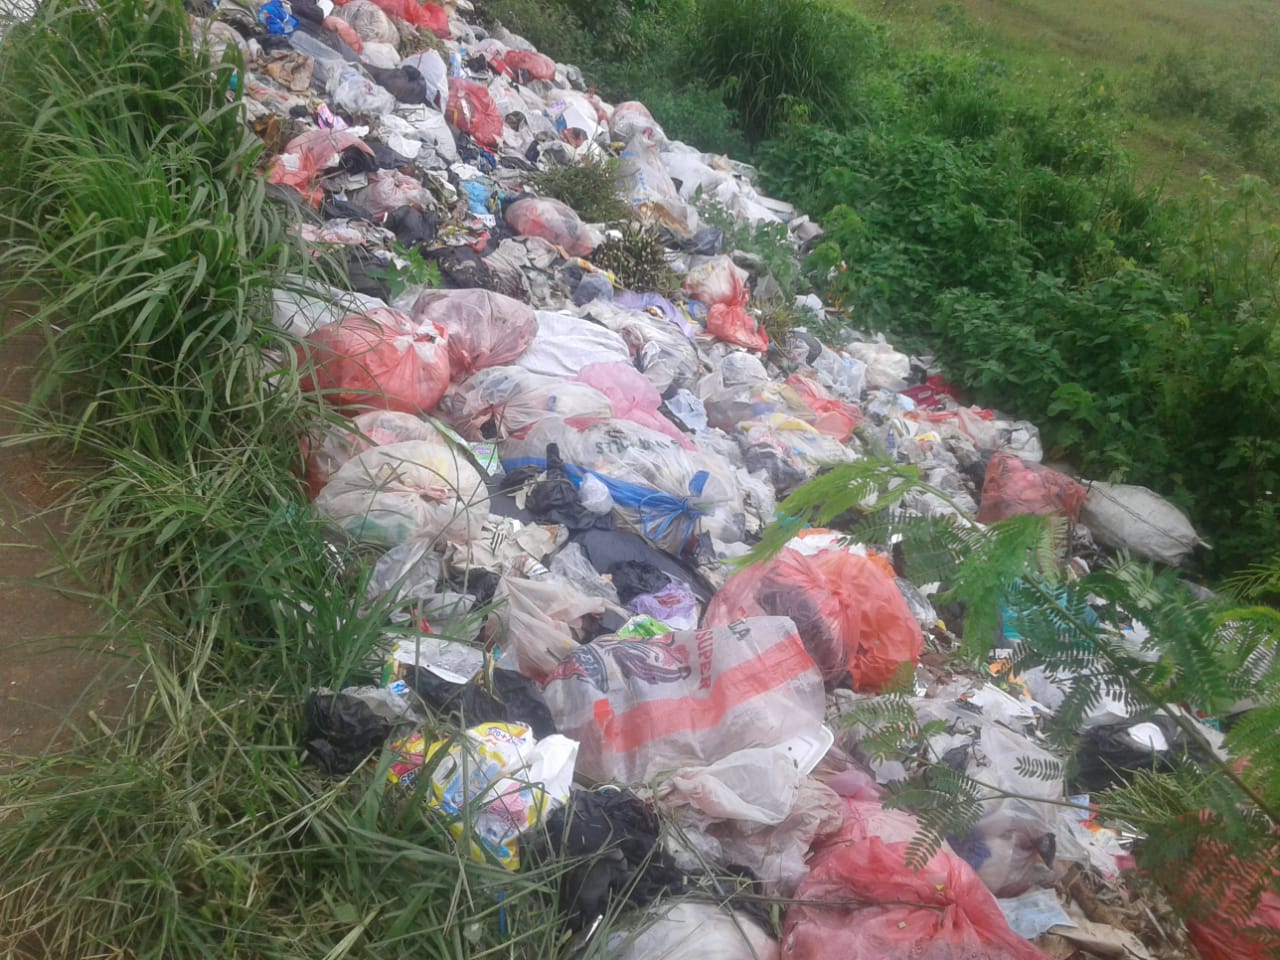 Sepelekan Masalah Sampah, Kecamatan Jayanti Tak Hiraukan Media